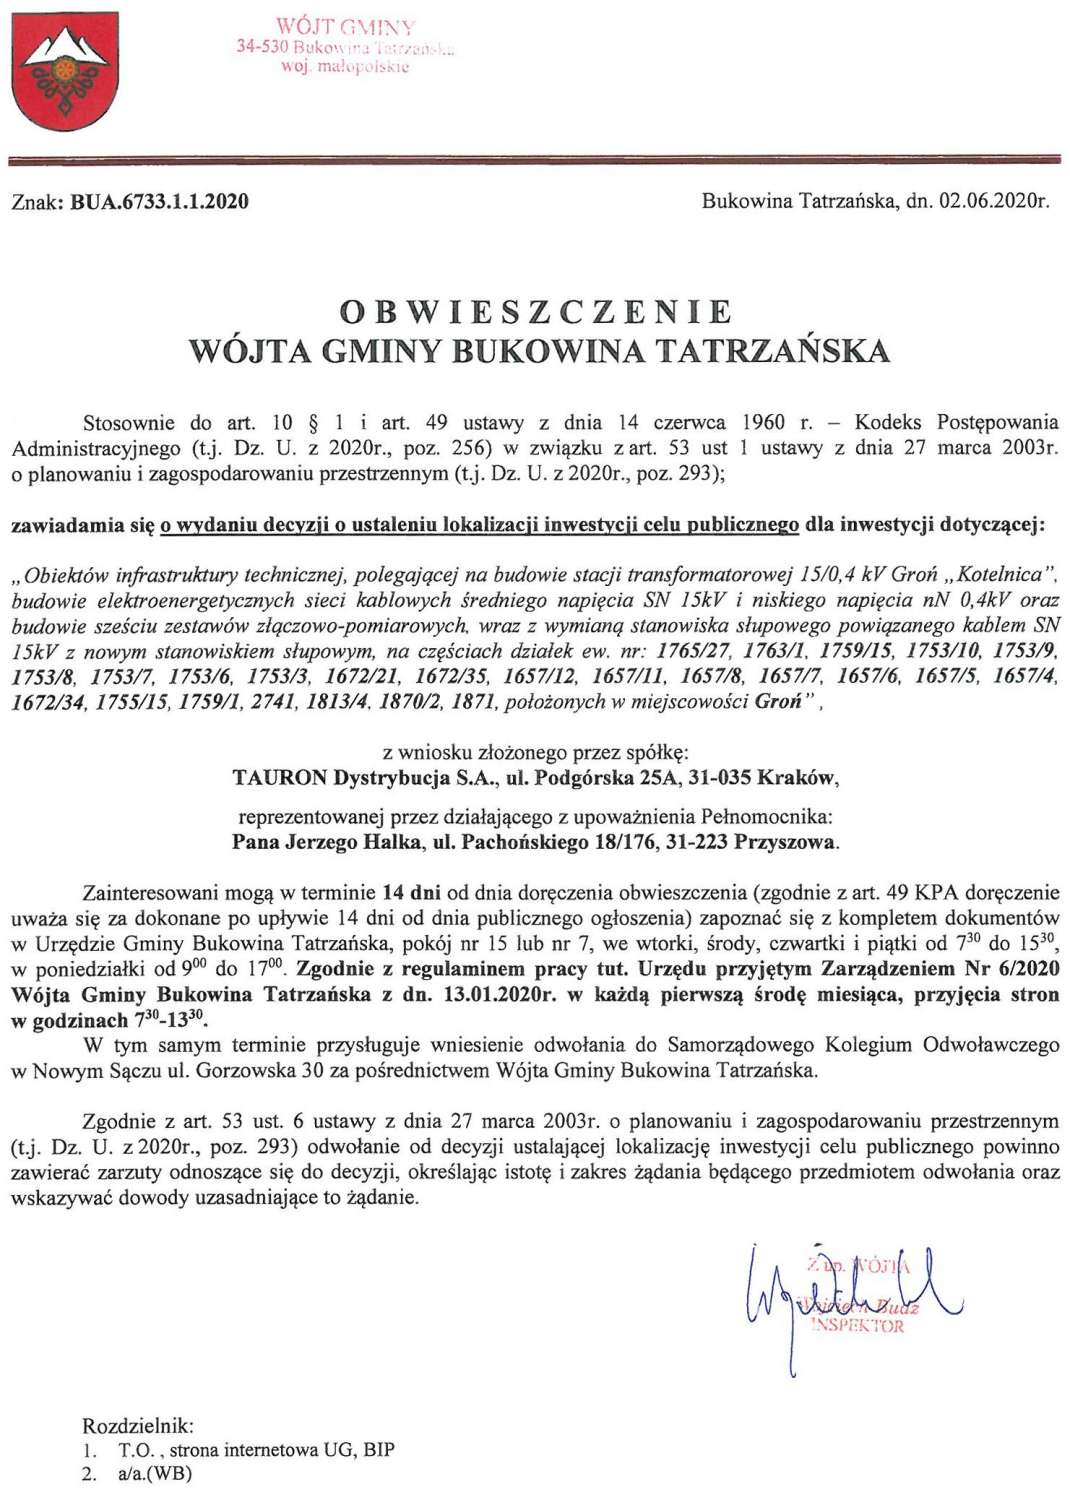 Obwieszczenie Wójta Gminy Bukowina Tatrzańska BUA 6733.1.1.2020